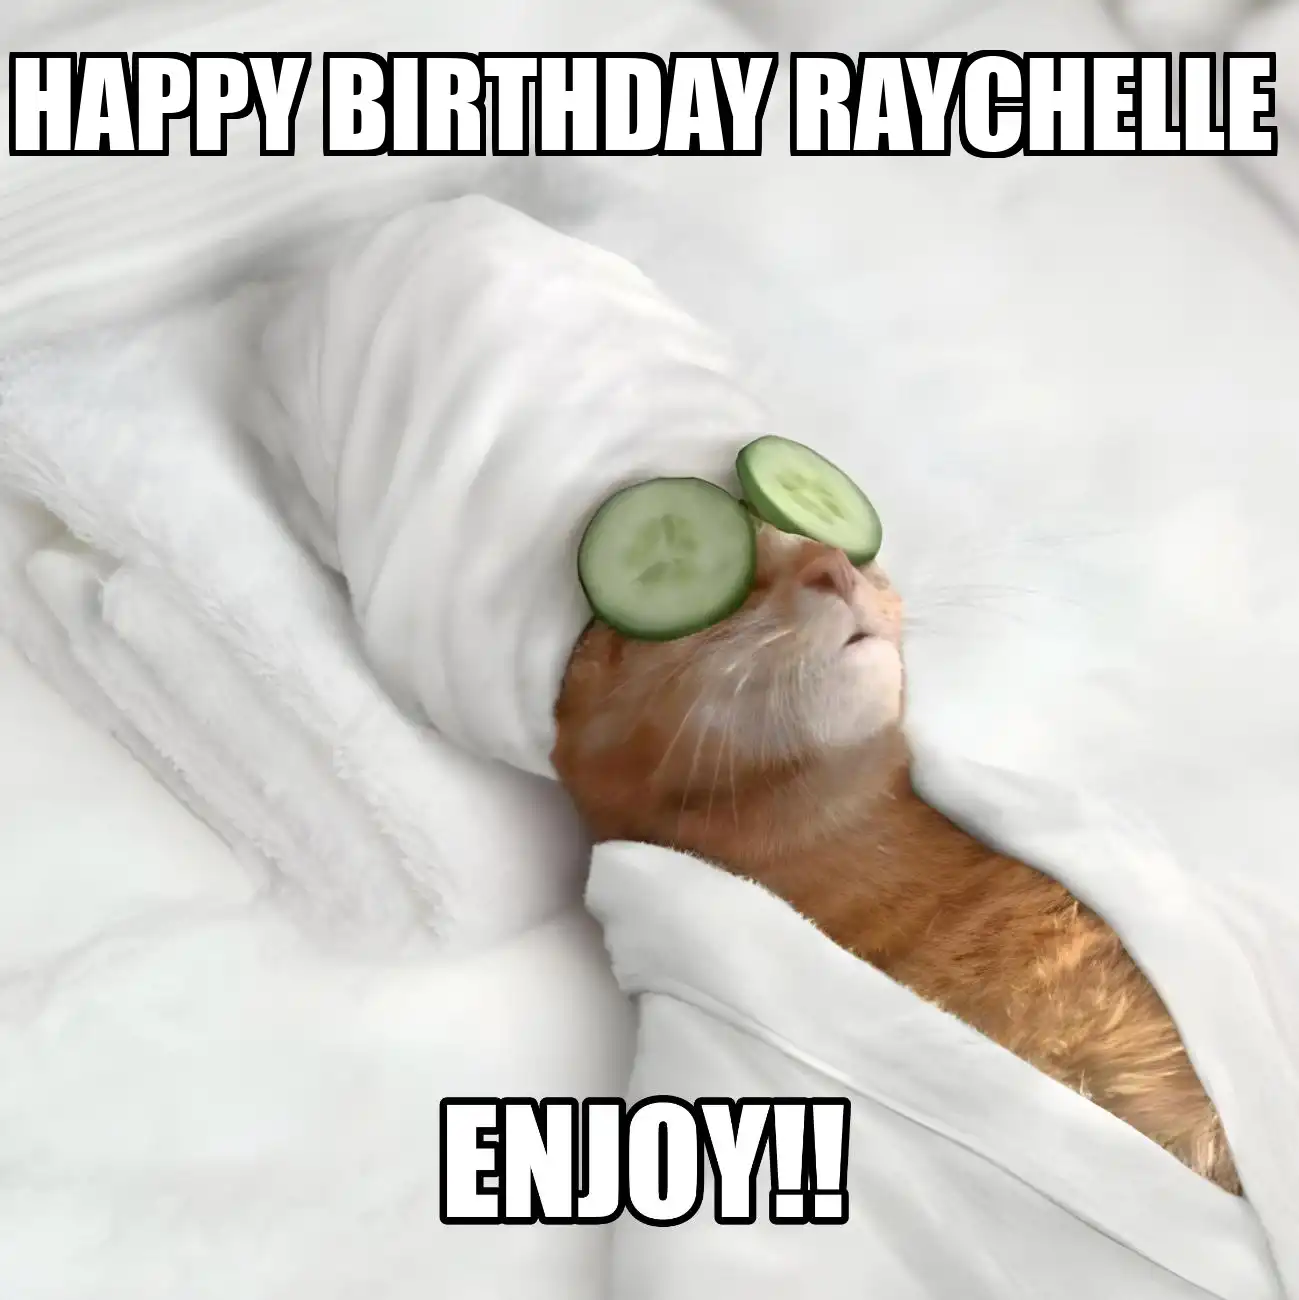 Happy Birthday Raychelle Enjoy Cat Meme